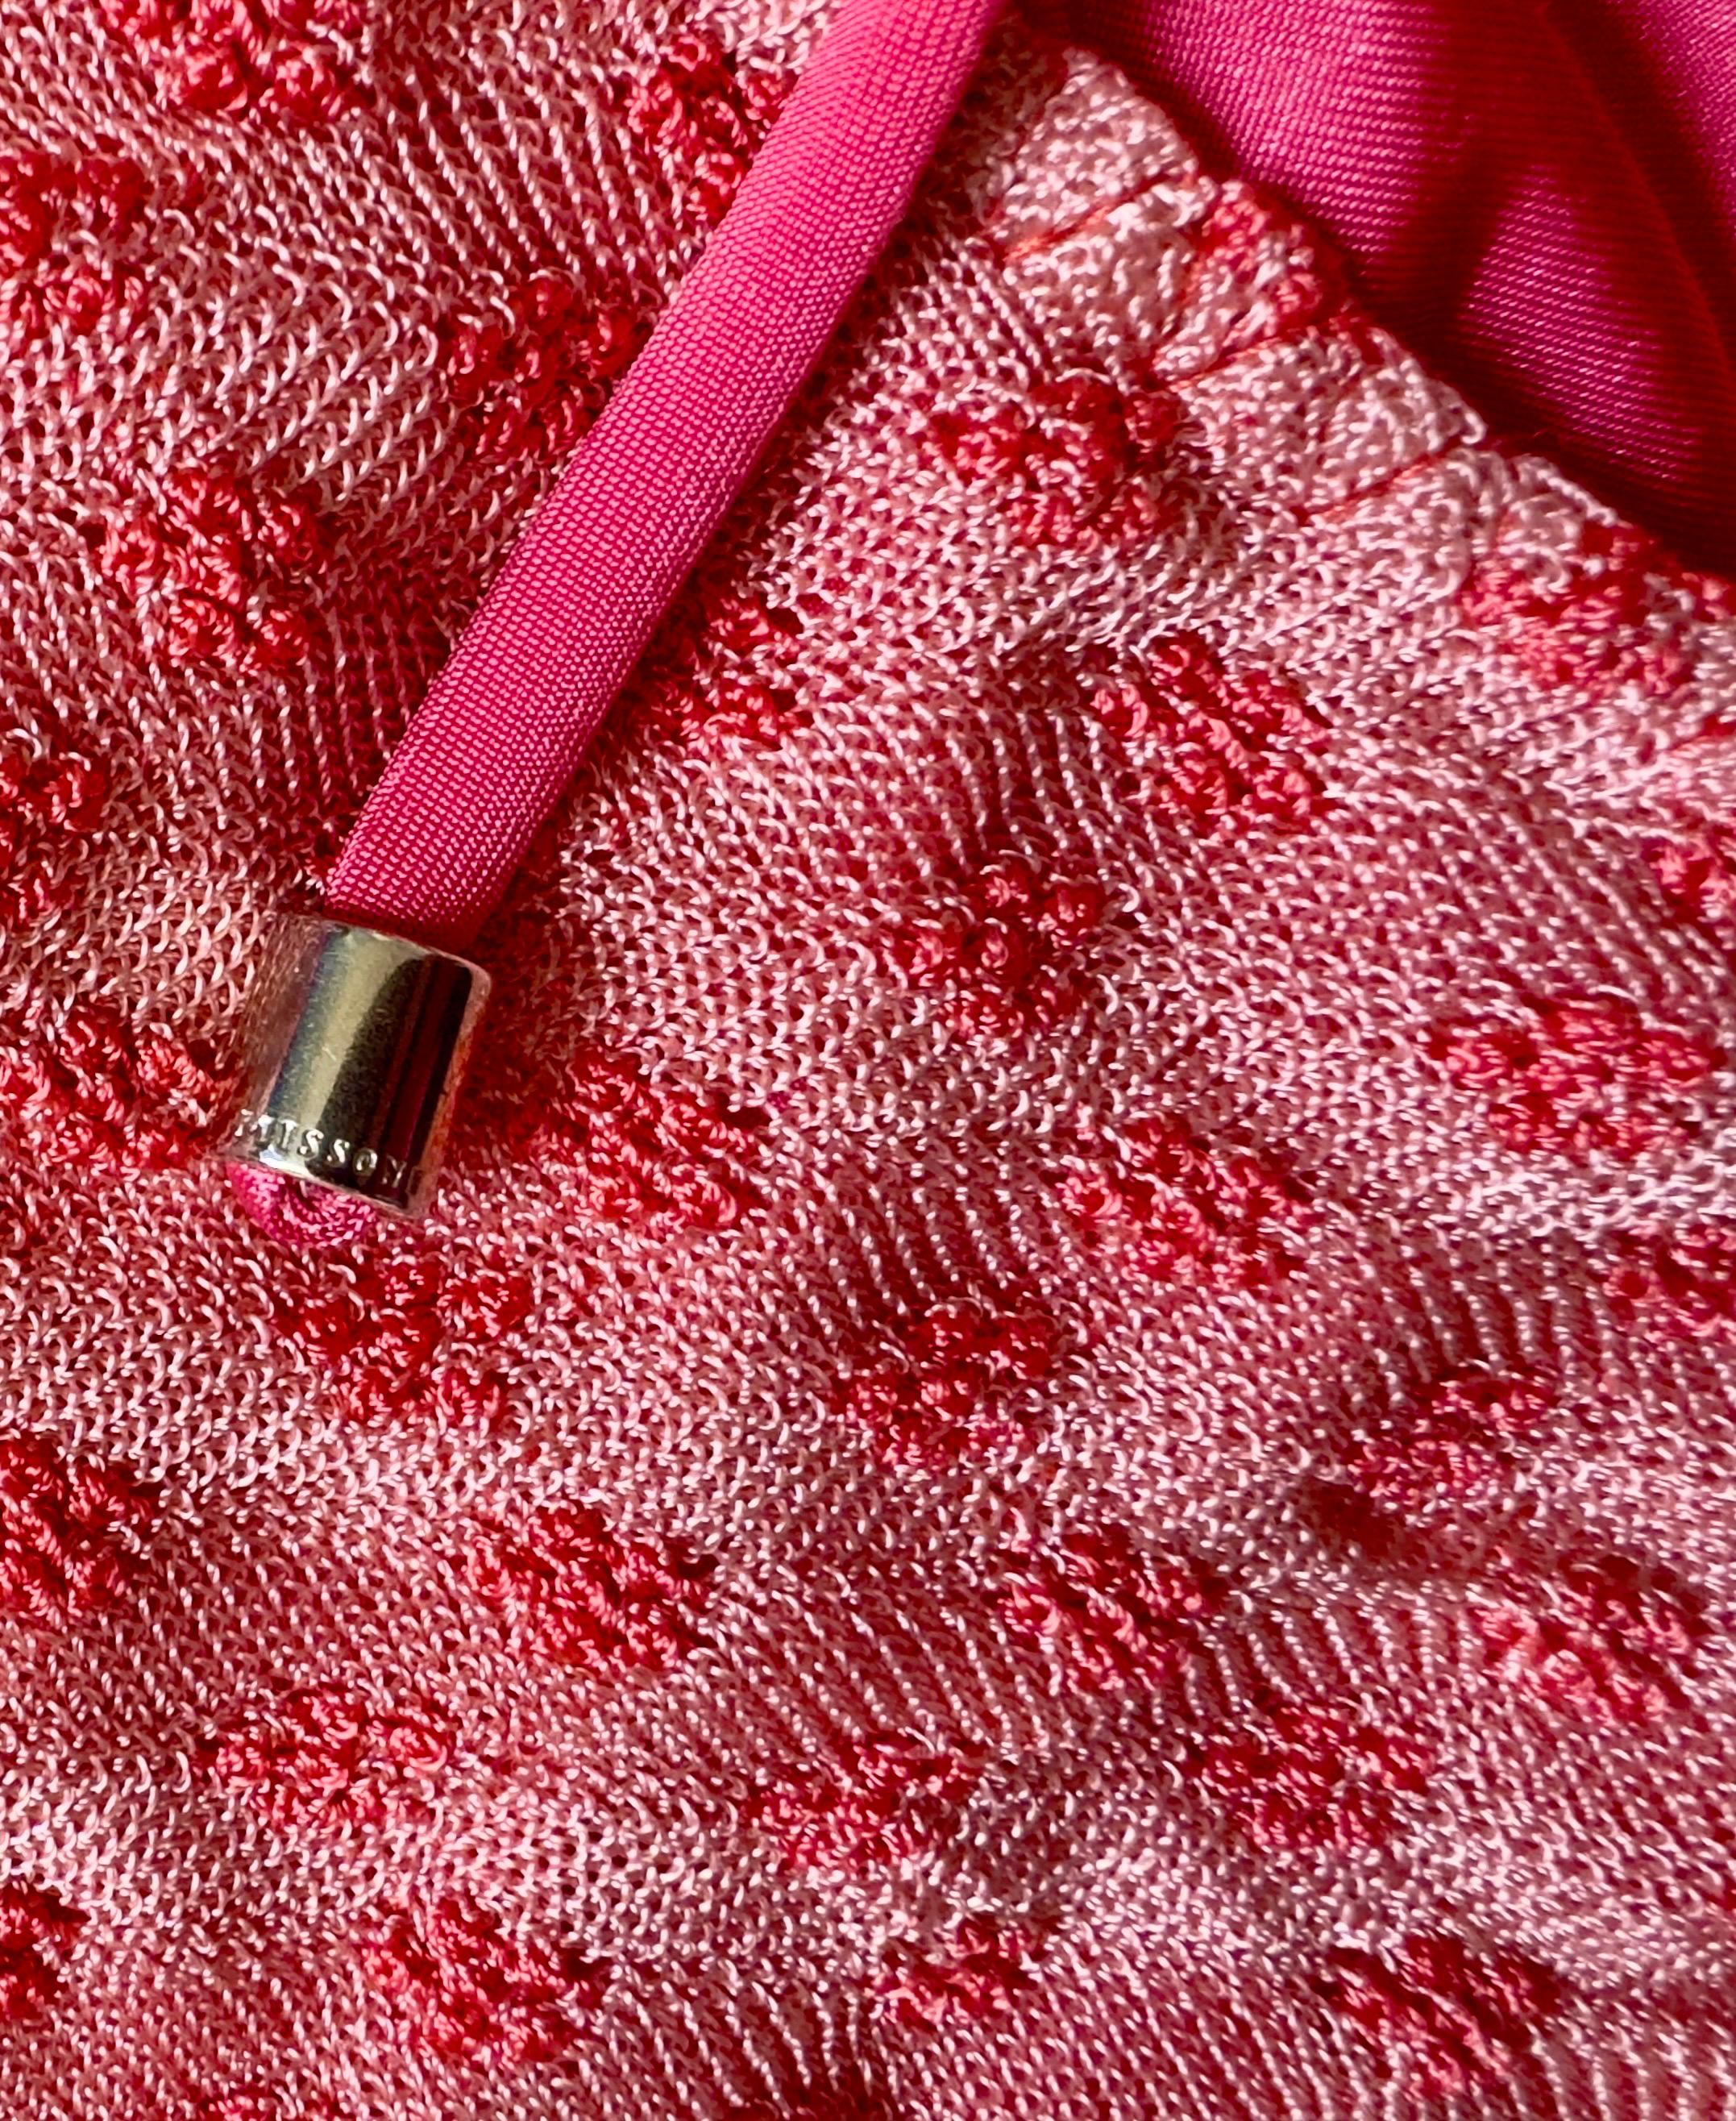 Aus luxuriösen Strickelementen gefertigt, entwirft Missoni diesen atemberaubenden Strickbikini in klassischer Triangel-Silhouette mit einem rosa Ton-in-Ton-Kontrastbesatz - der perfekte Bikini für den luxuriösen Abend am Pool.

DETAILS:

Edler